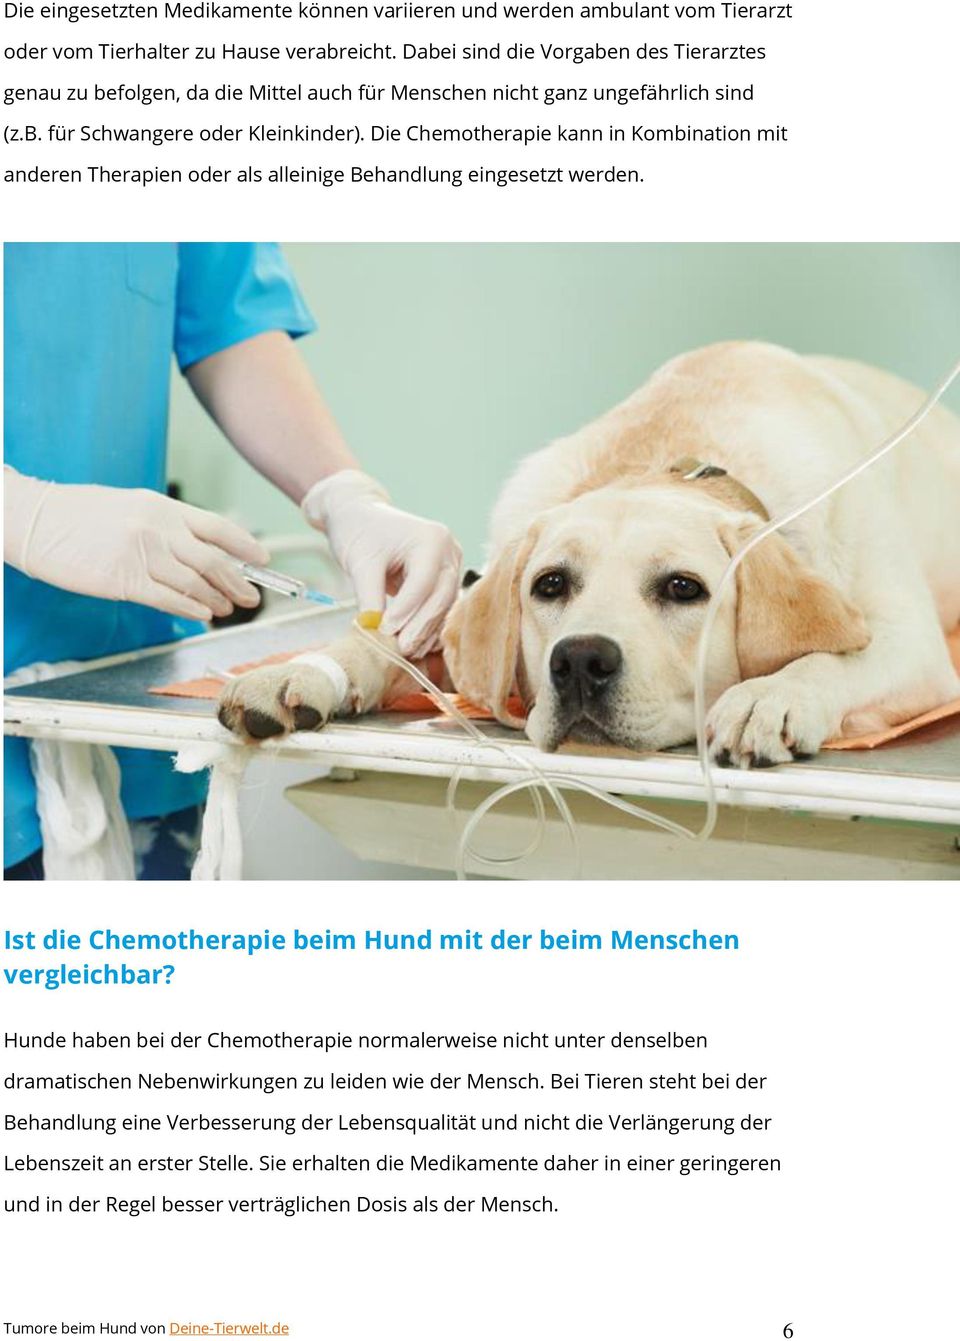 Die Chemotherapie kann in Kombination mit anderen Therapien oder als alleinige Behandlung eingesetzt werden. Ist die Chemotherapie beim Hund mit der beim Menschen vergleichbar?